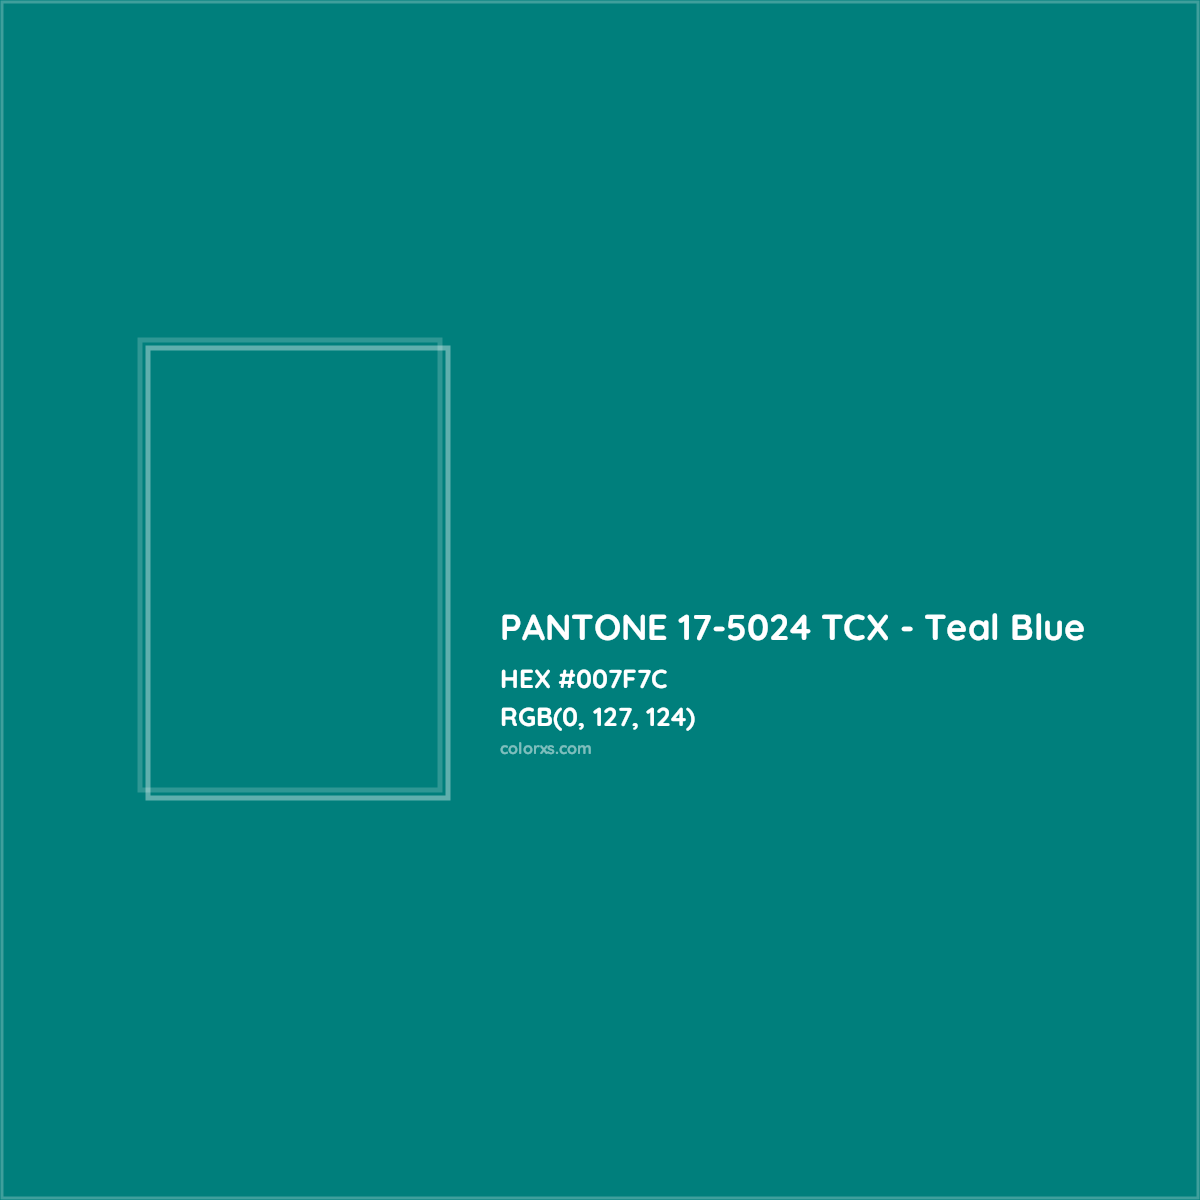 About PANTONE 17-5024 TCX - Teal Blue Color - Color codes, similar ...